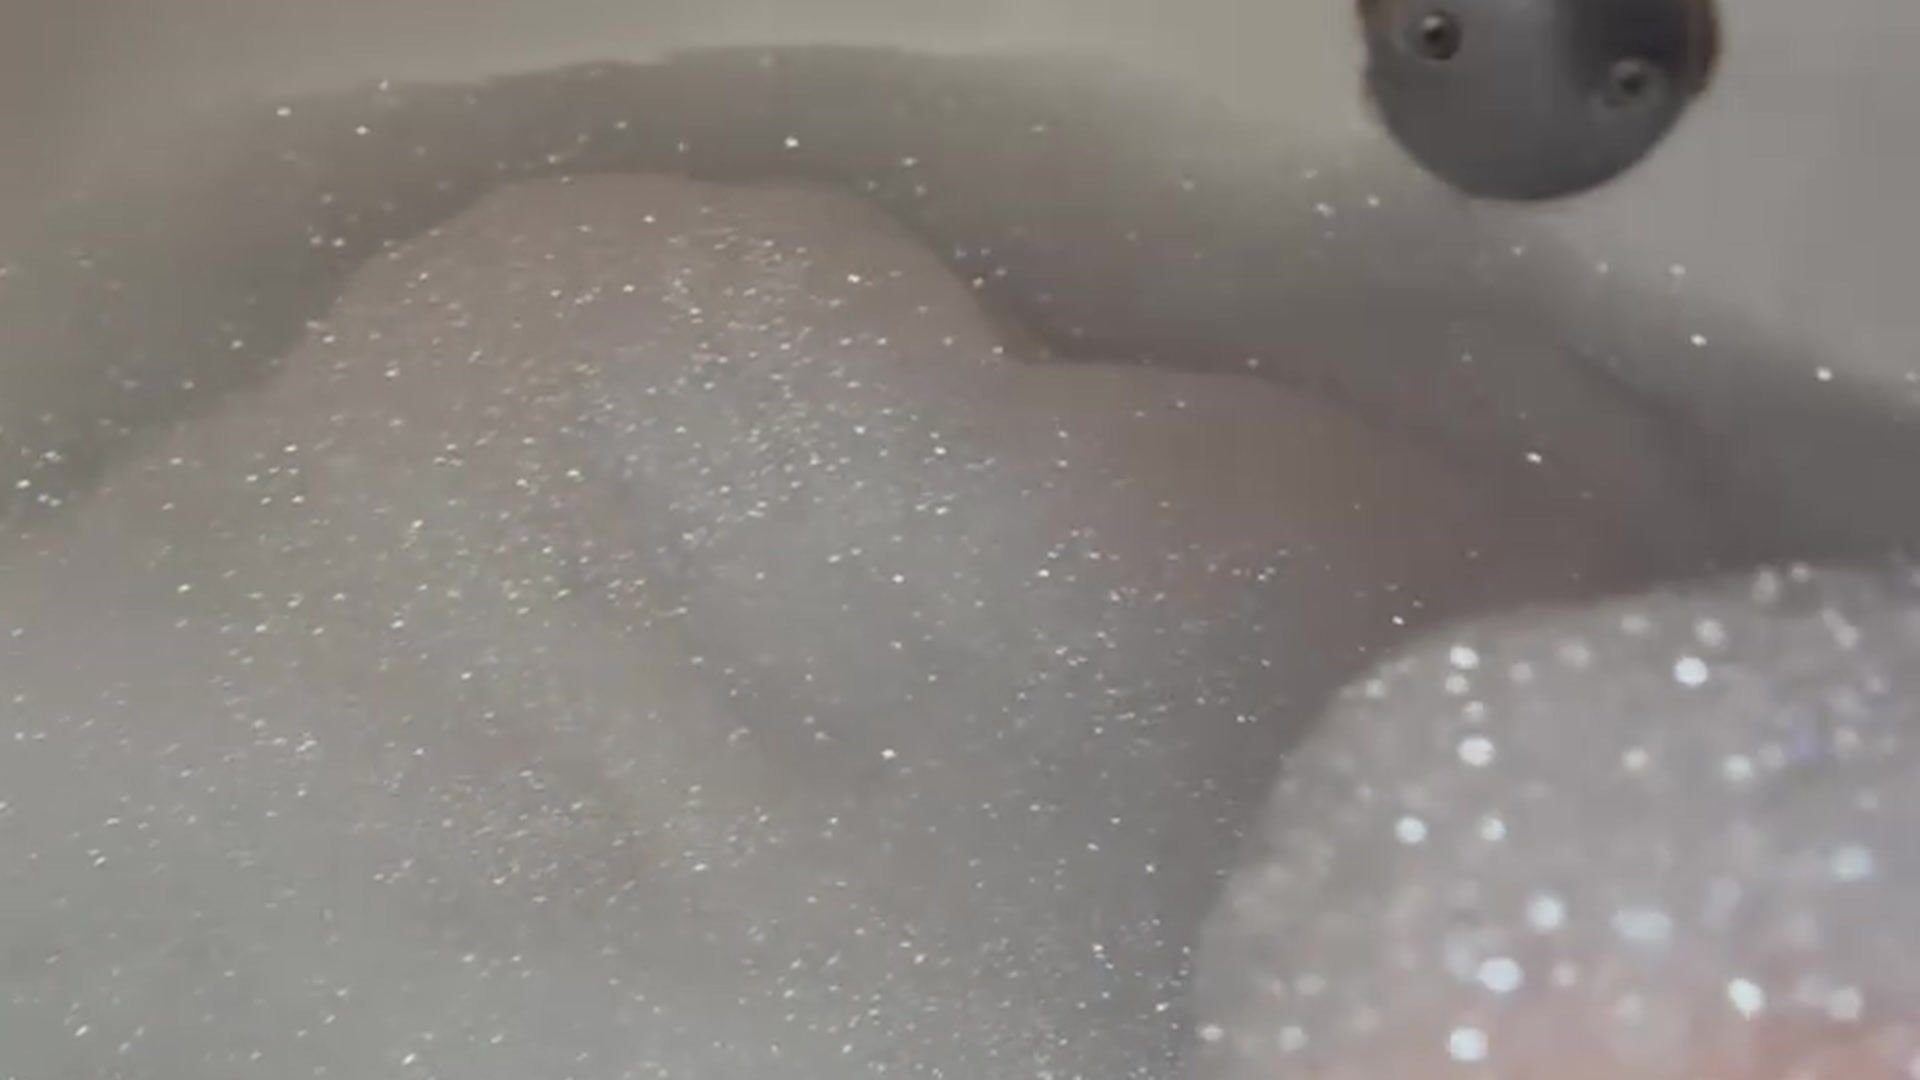 Steamy bubbles